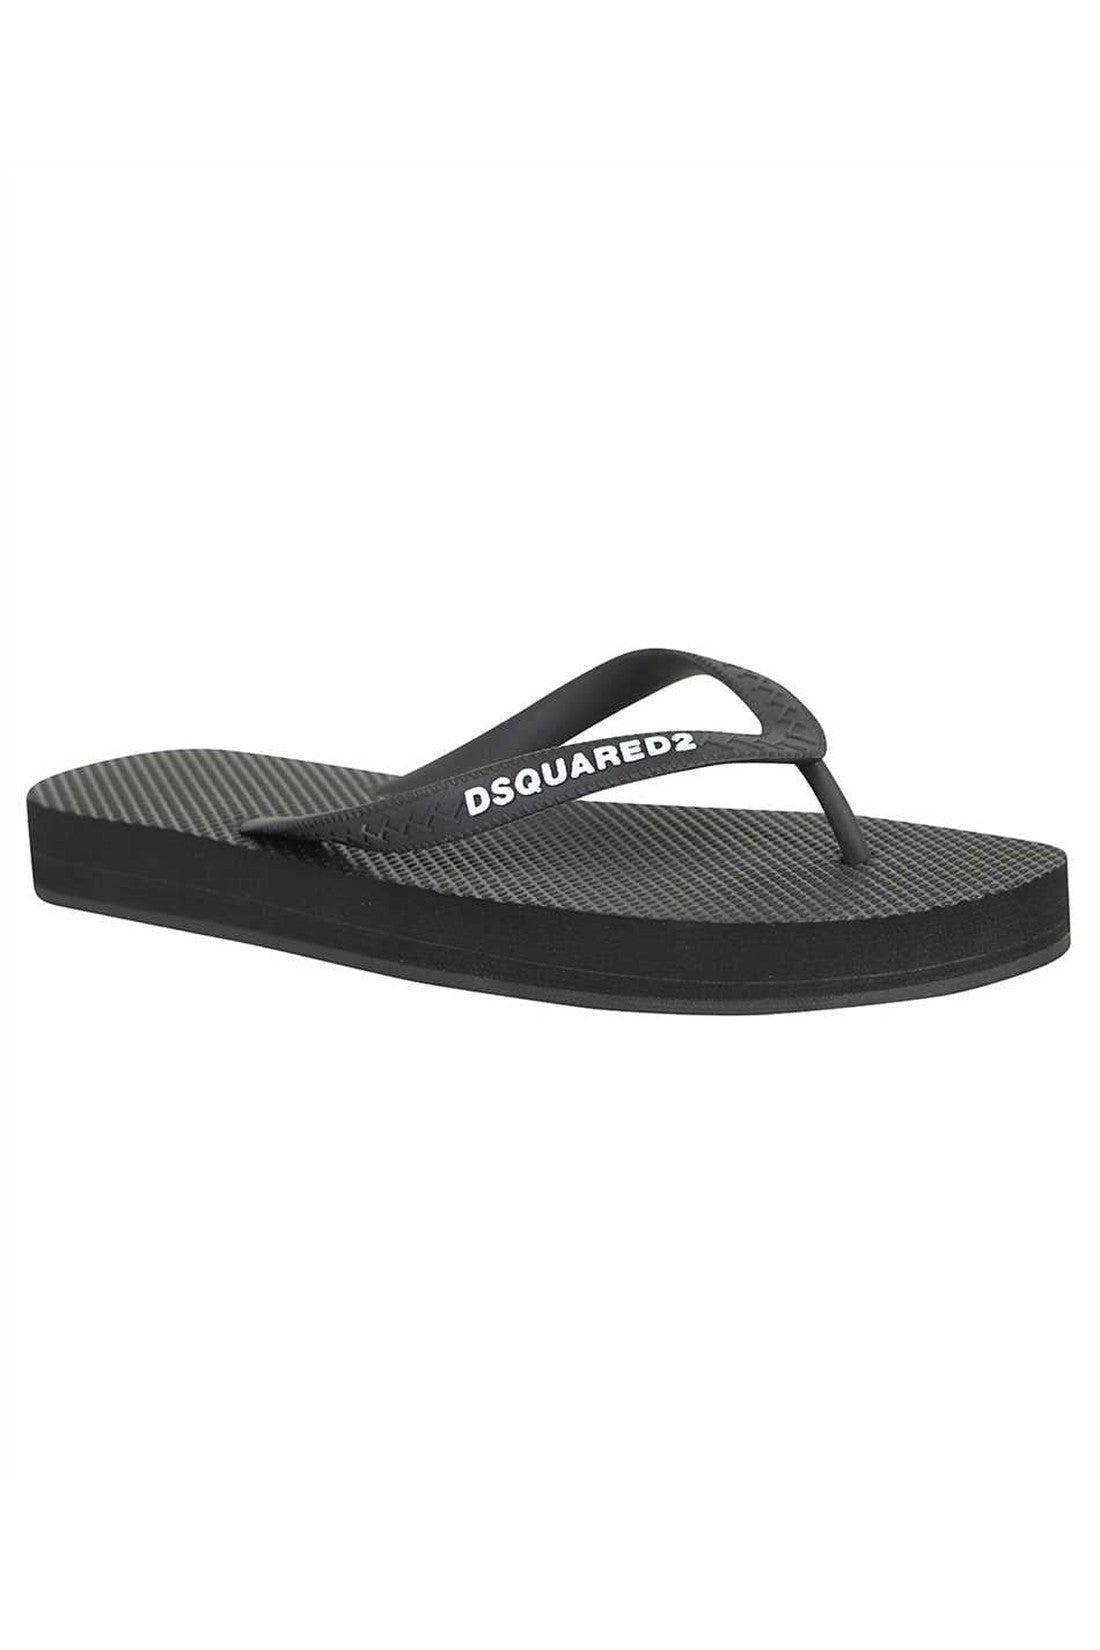 Dsquared2-OUTLET-SALE-Rubber thong-sandals-ARCHIVIST